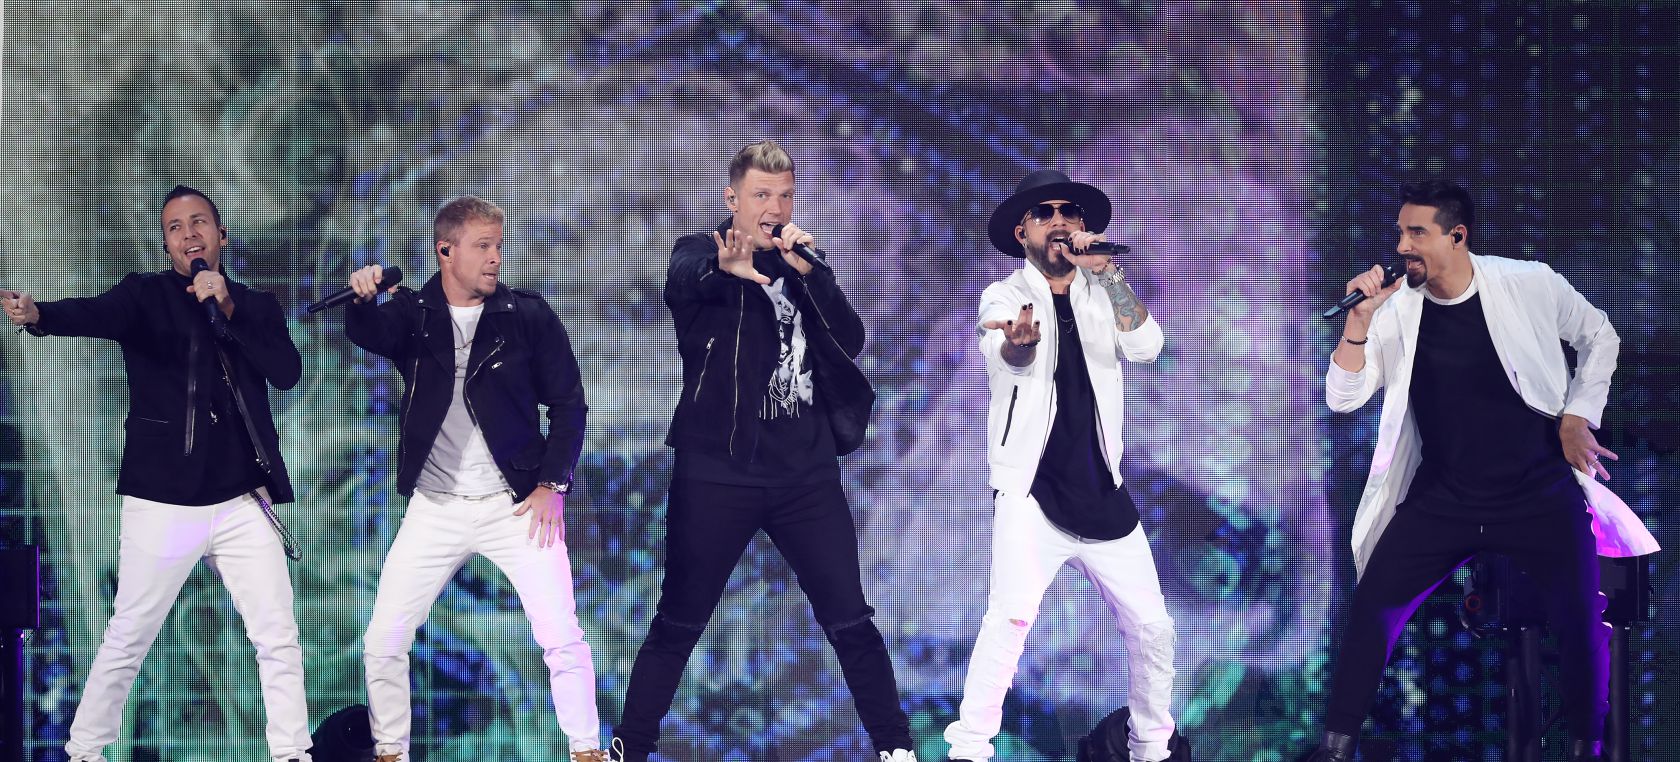 Backstreet Boys protagoniza un momento precioso junto a sus hijos encima del escenario